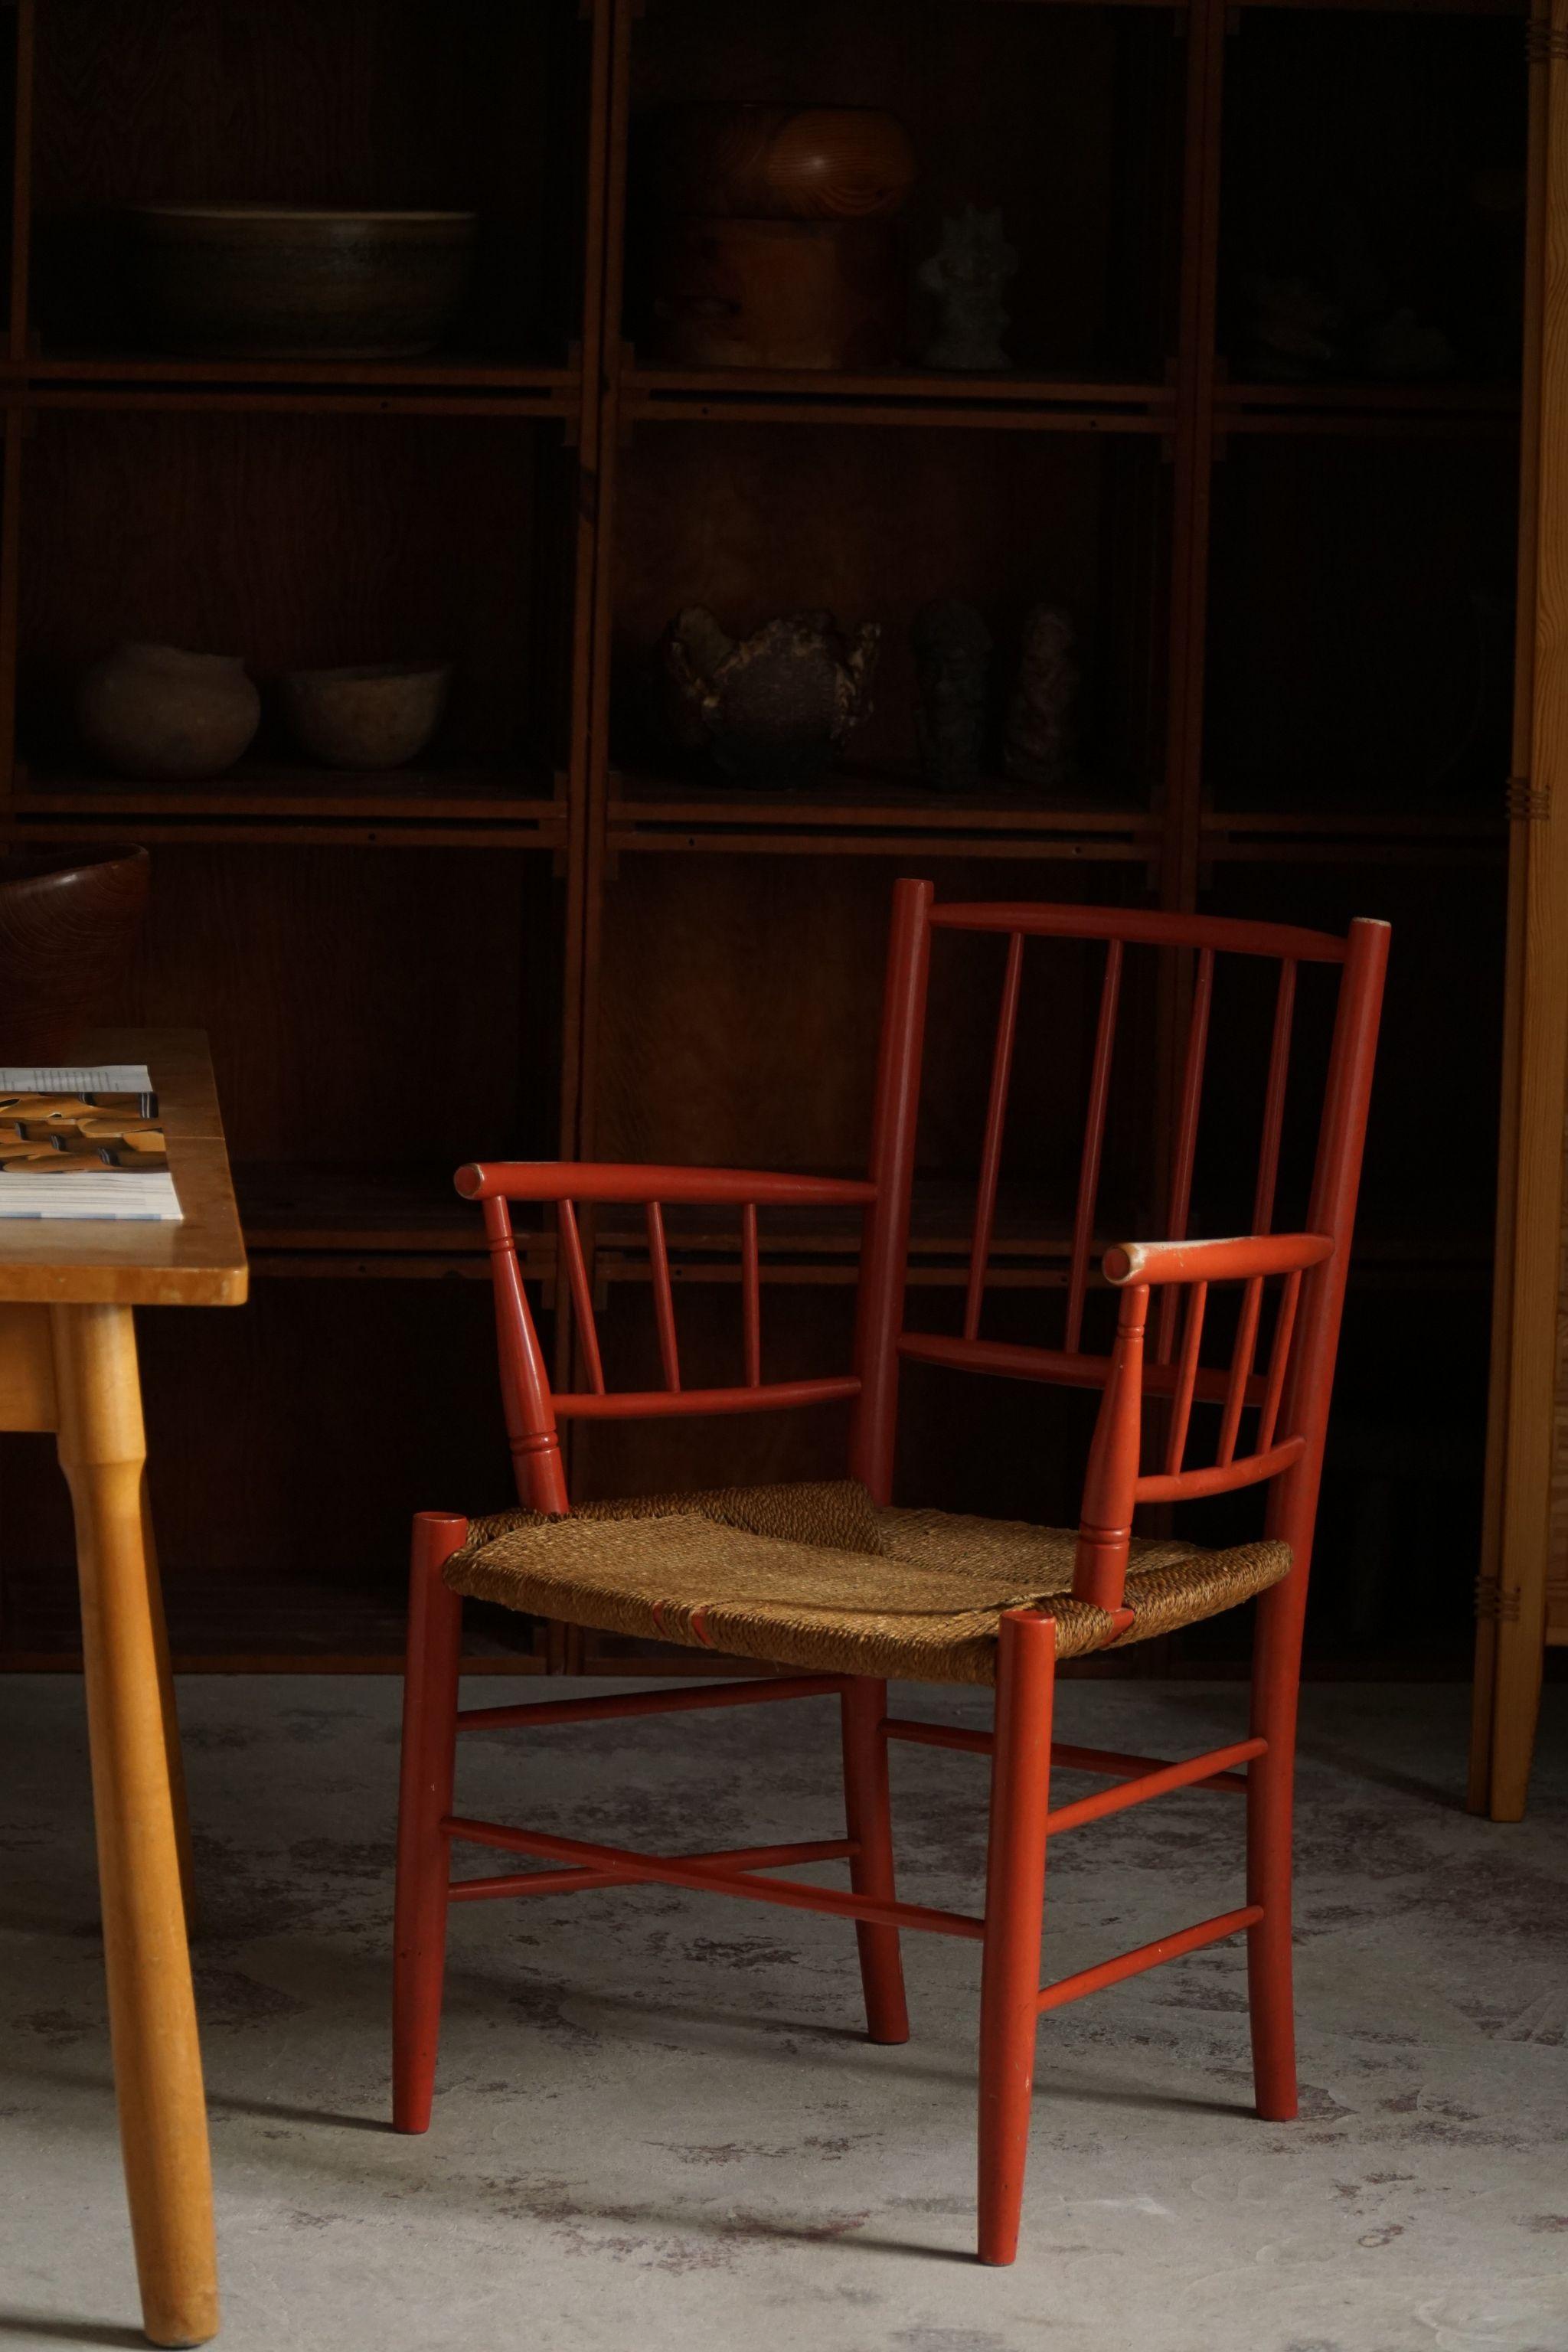 Rare ensemble de 4 beautés vintage de l'artiste danois Björn Wiinblad, réalisées pour Nässjö Stolefabrik en Suède dans les années 1950. Un ensemble de collection, en bois peint en rouge avec une grande patine et des sièges en gazon tressé. 

Un